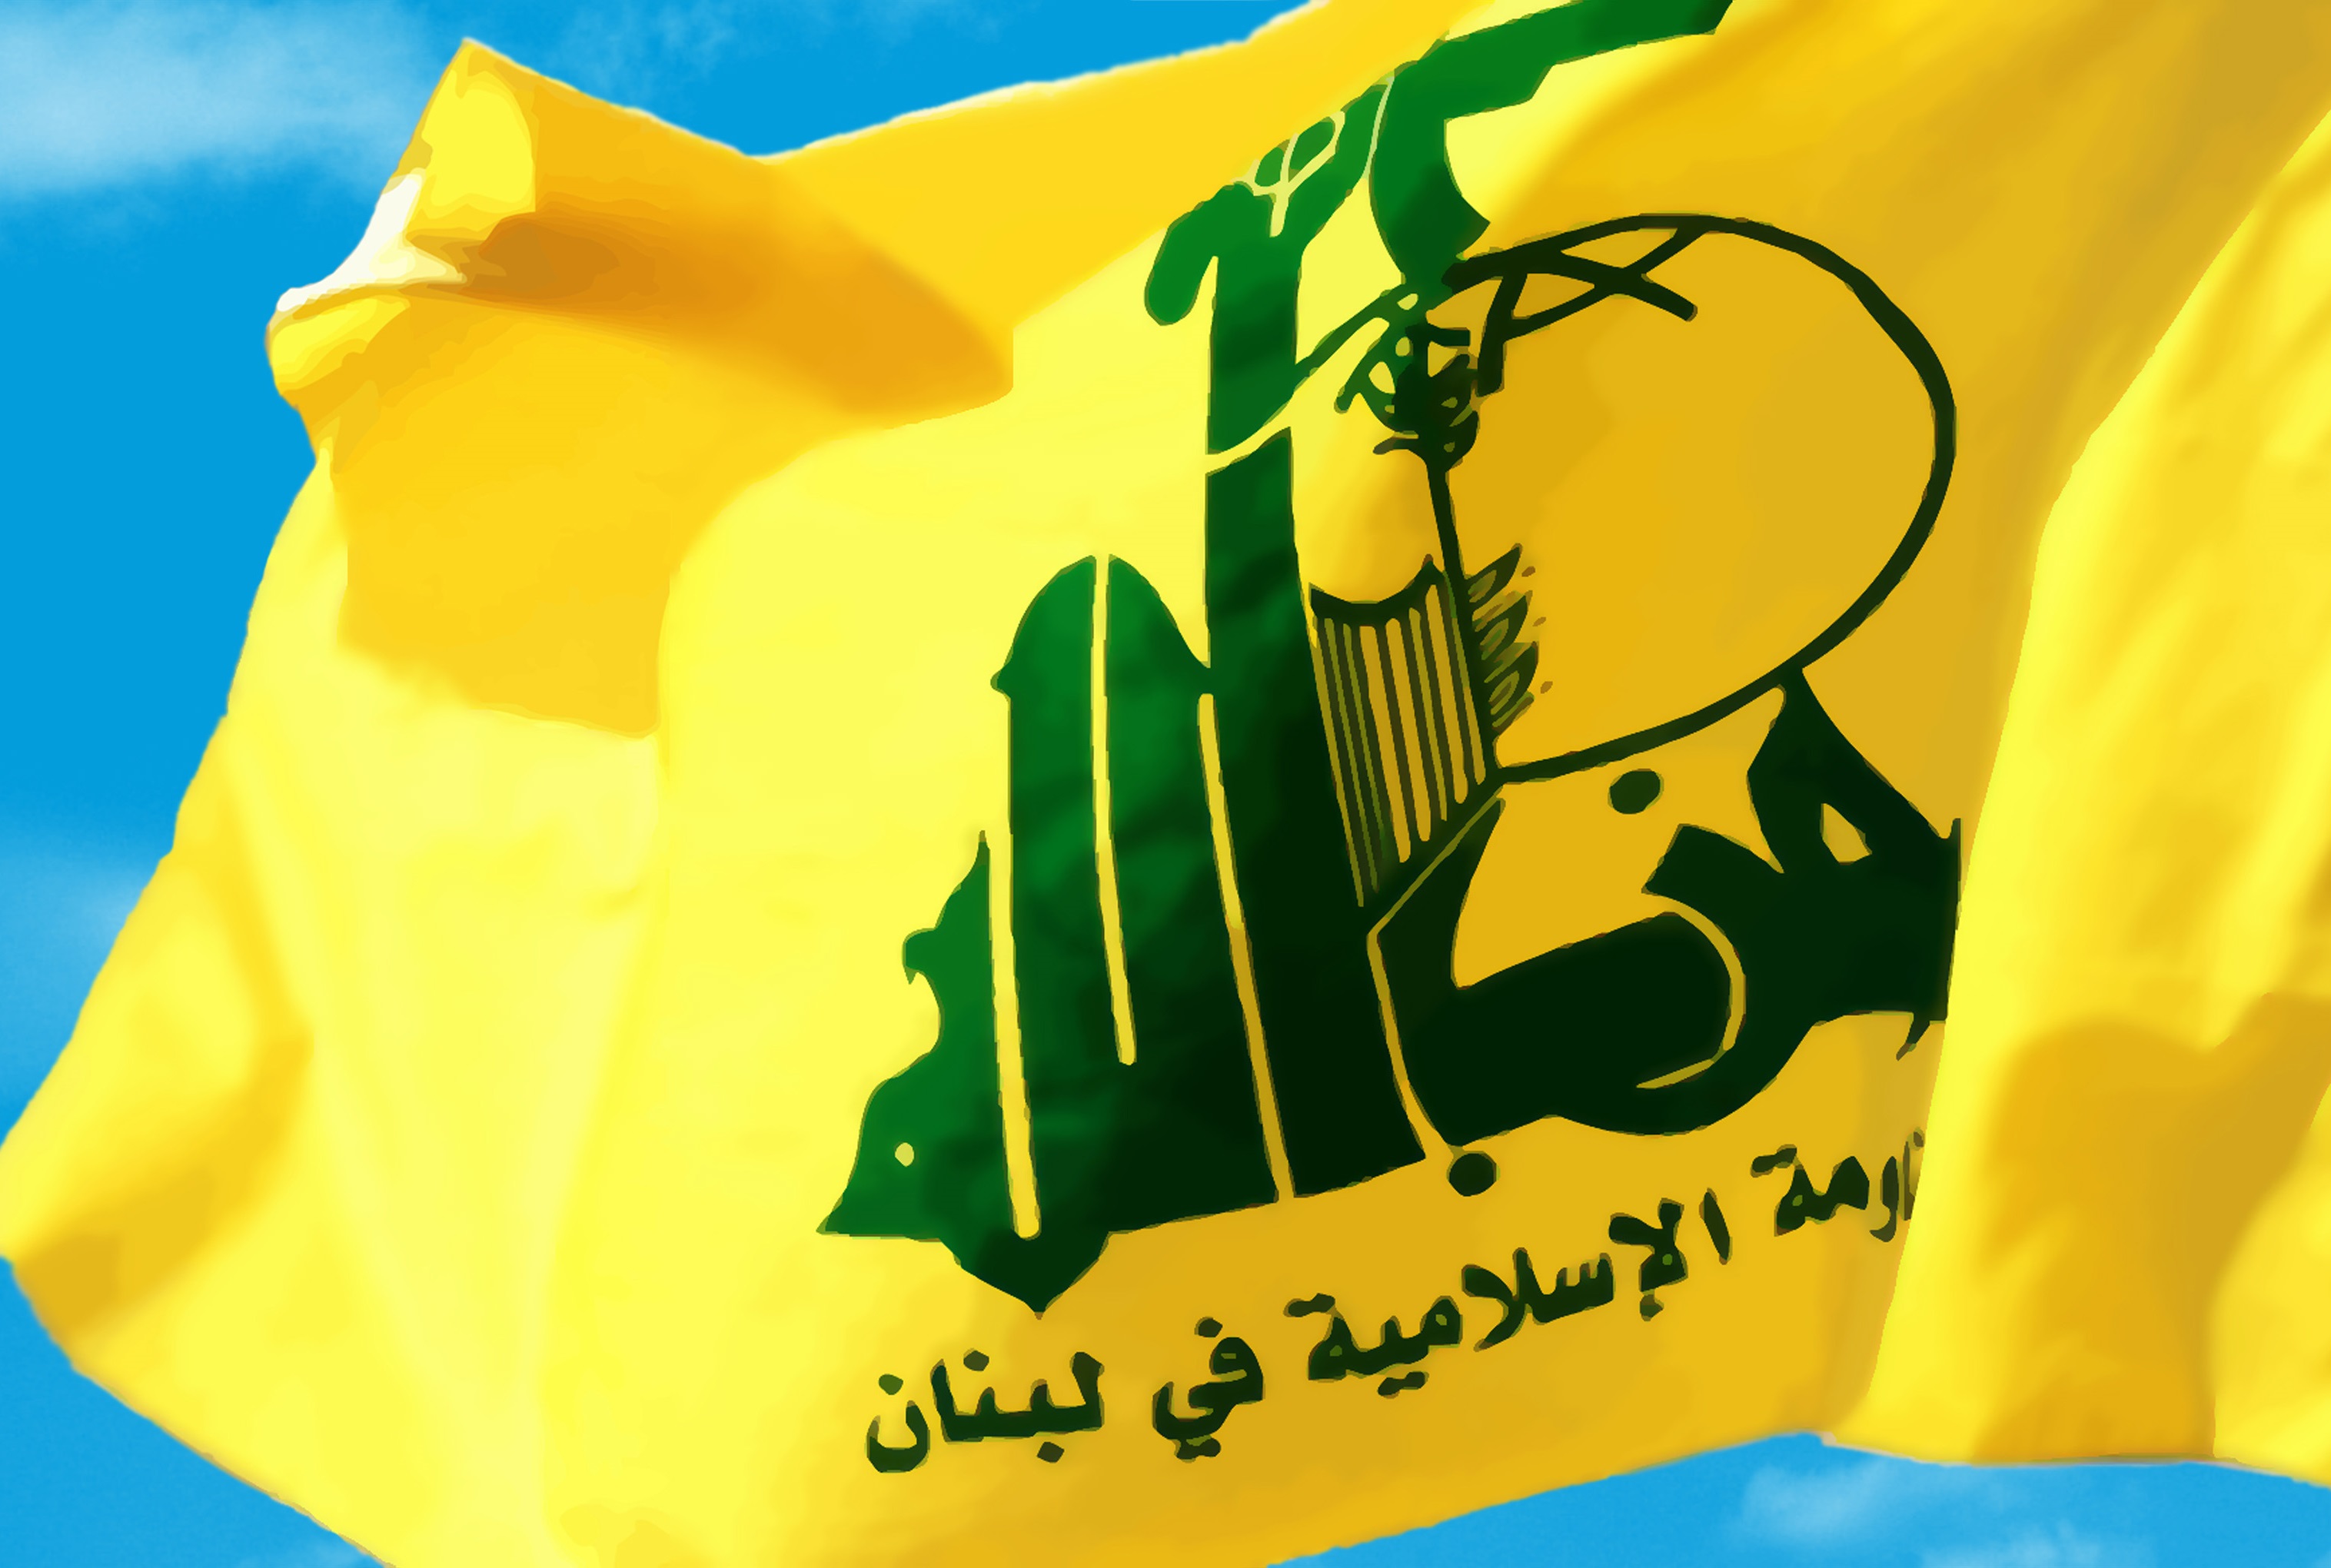 واکنش حزب الله به تحریم یکی از نمایندگان پارلمان لبنان توسط آمریکا